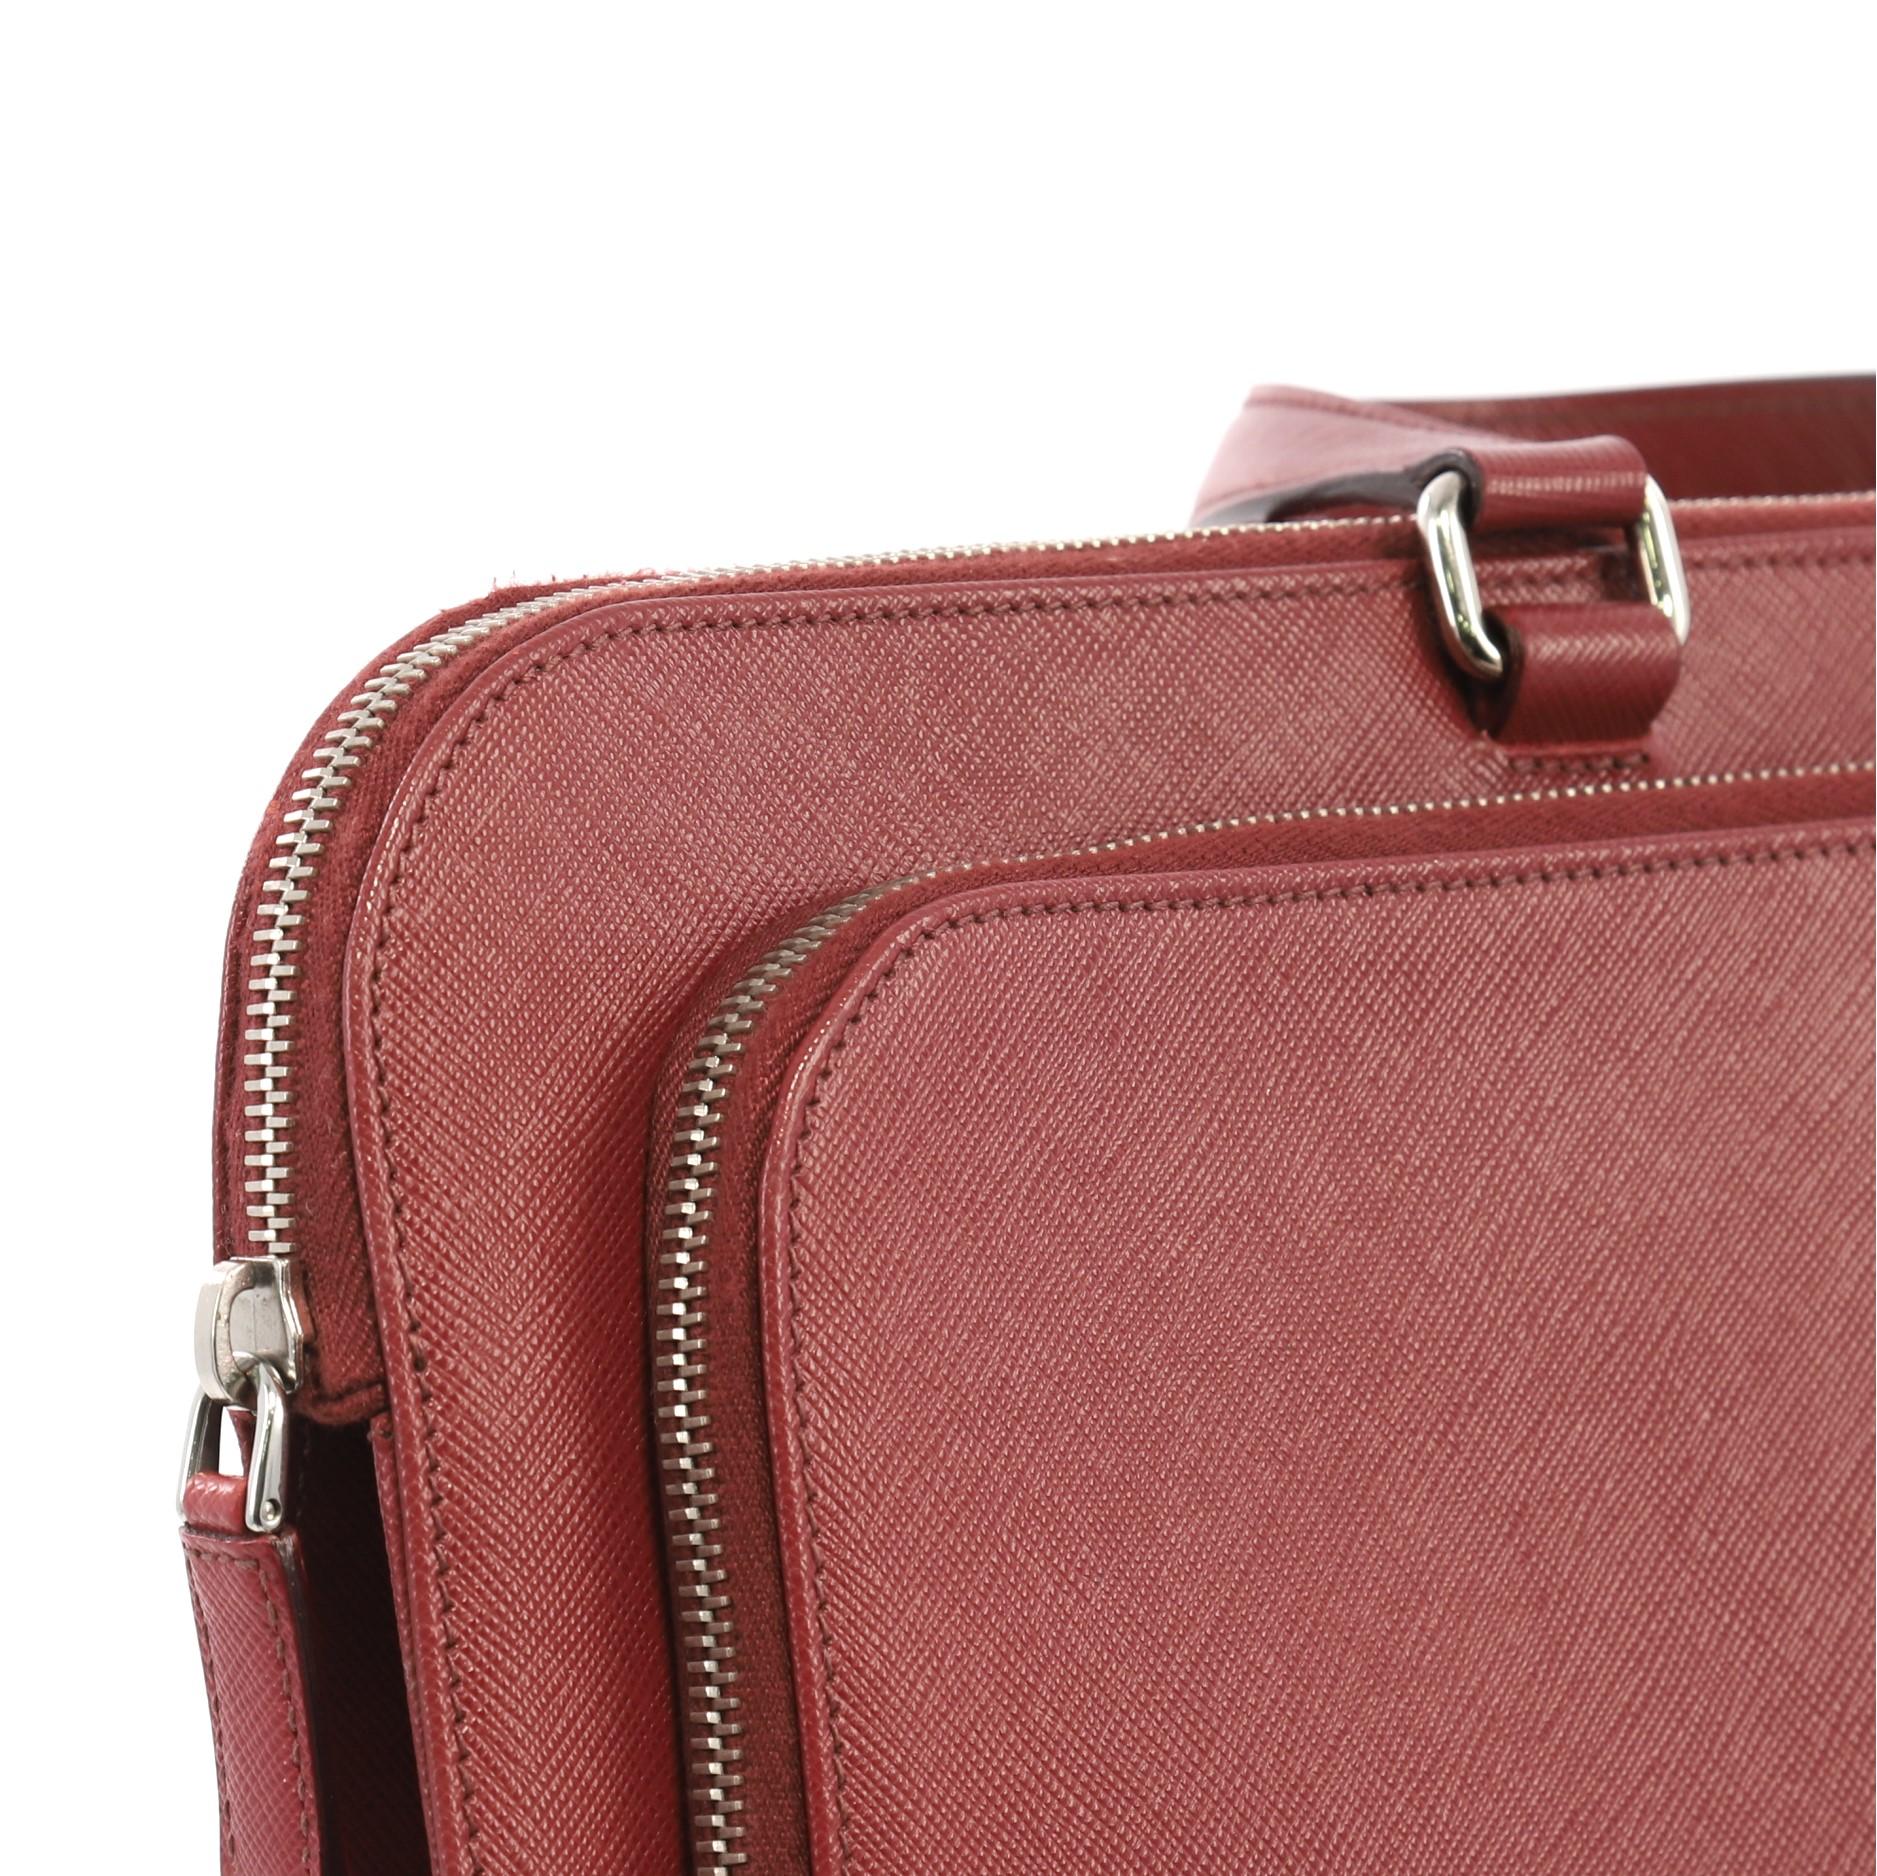 Prada Travel Briefcase Saffiano Leather 1